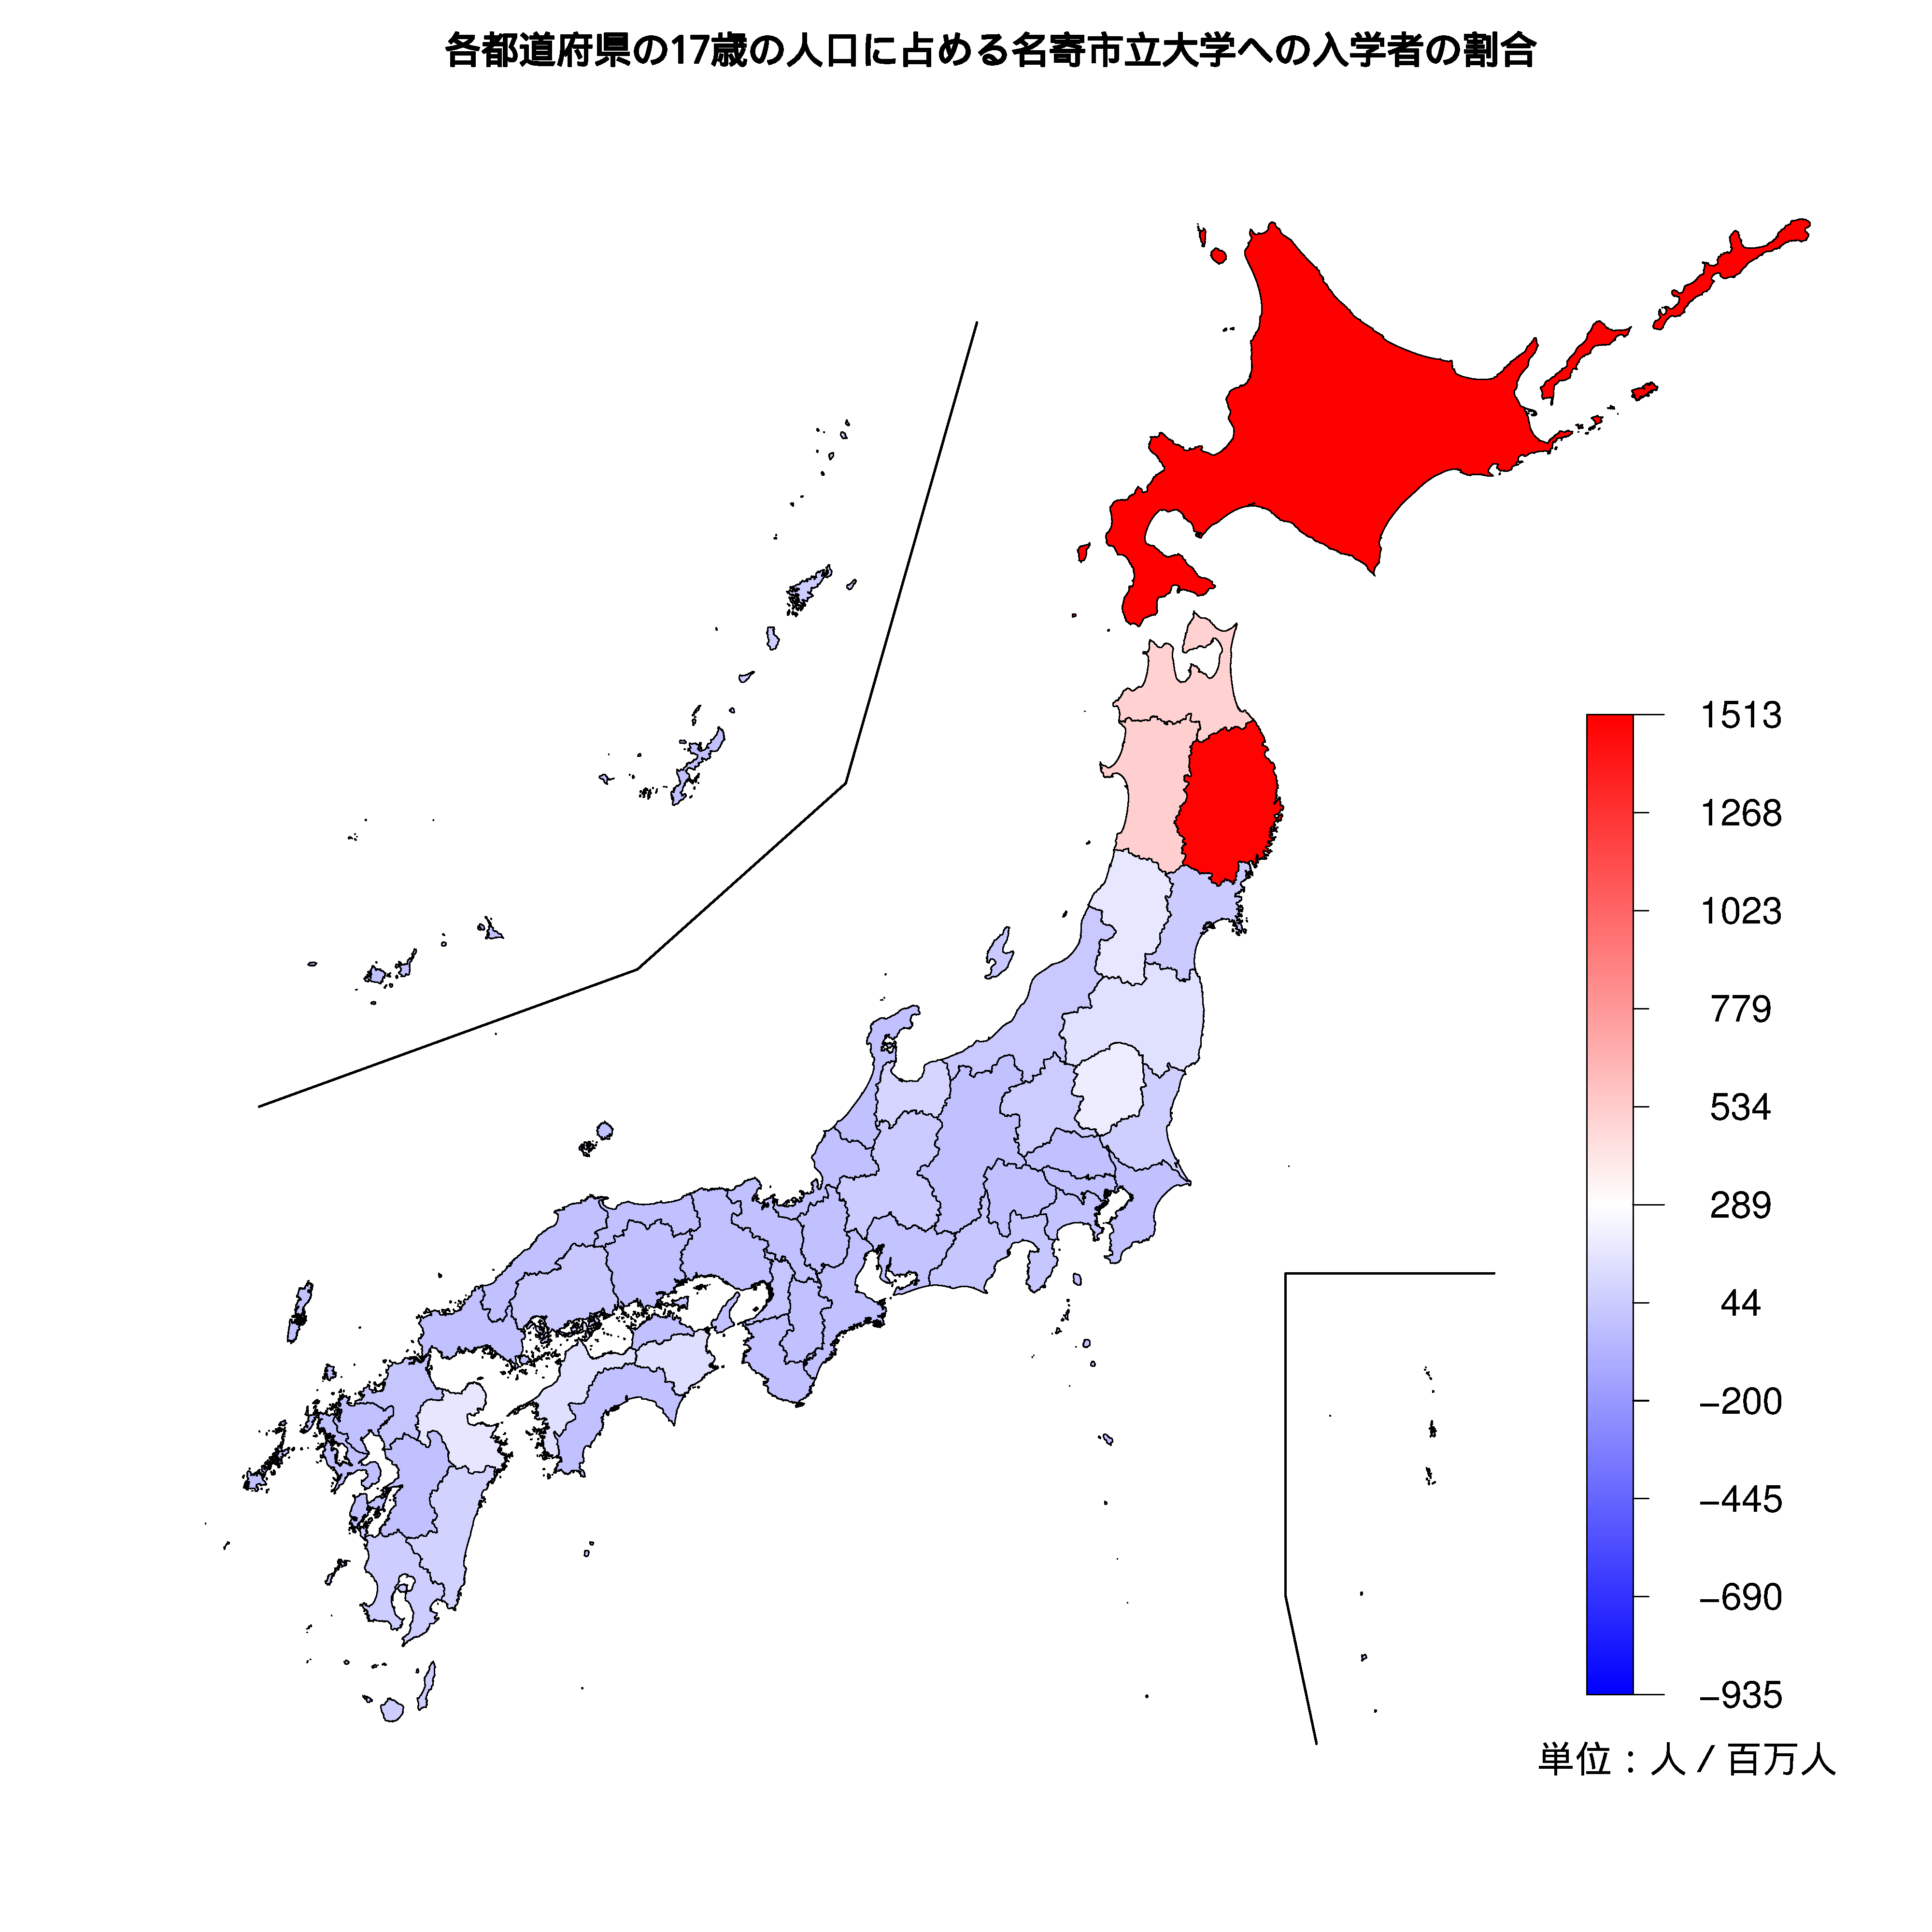 名寄市立大学への入学者が多い都道府県の色分け地図